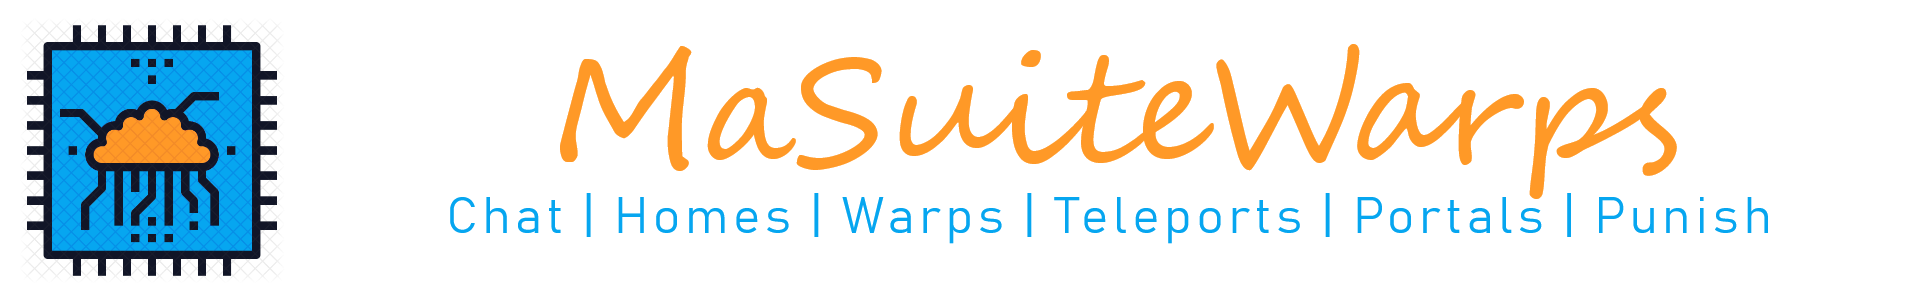 MaSuiteWarps logo